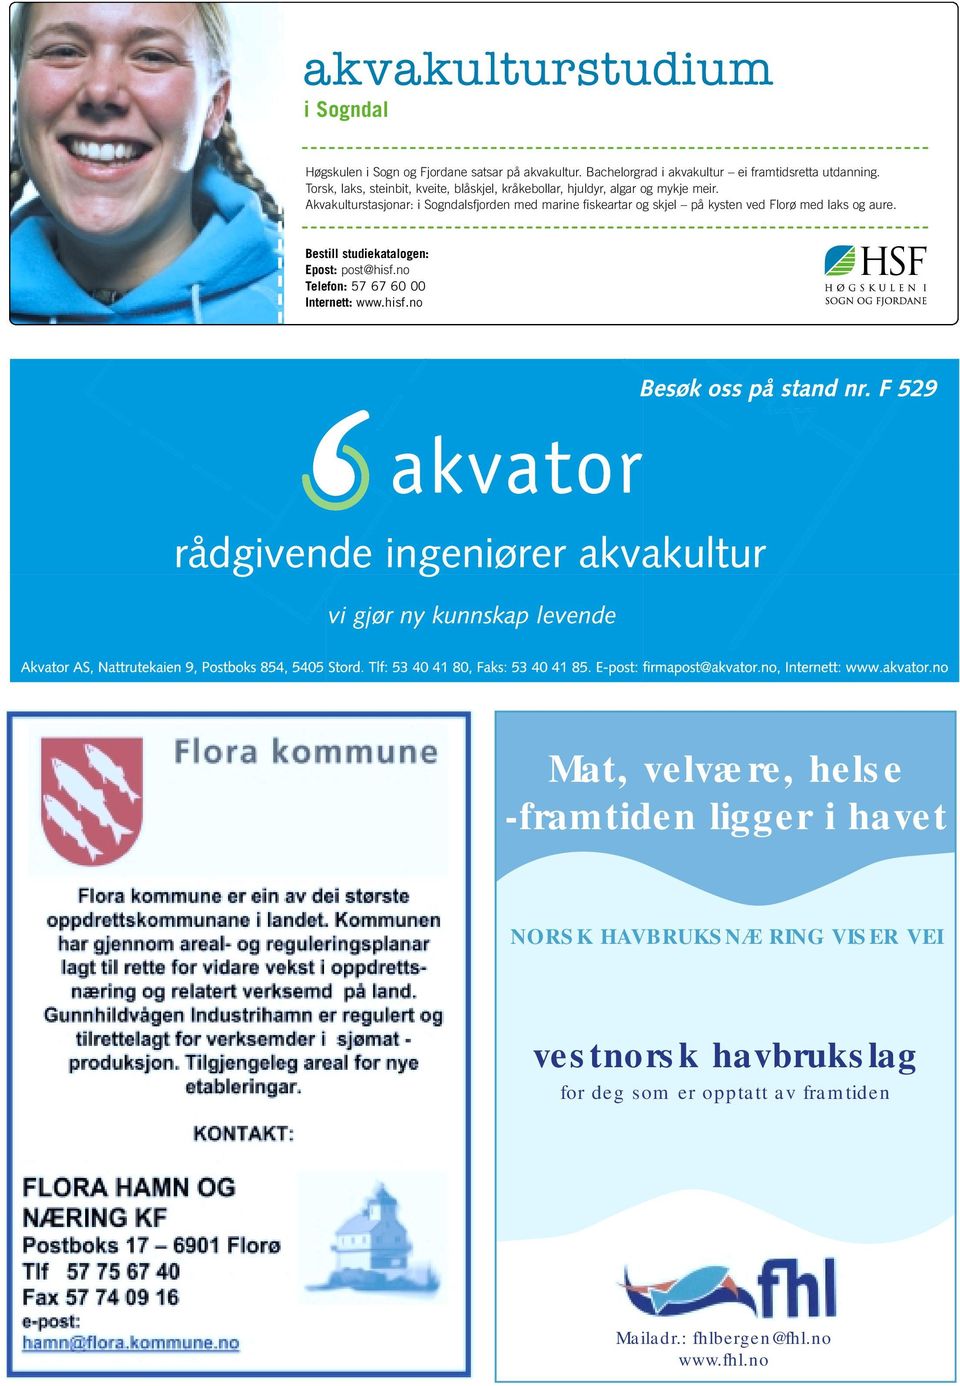 Akvakulturstasjonar: i Sogndalsfjorden med marine fiskeartar og skjel på kysten ved Florø med laks og aure.